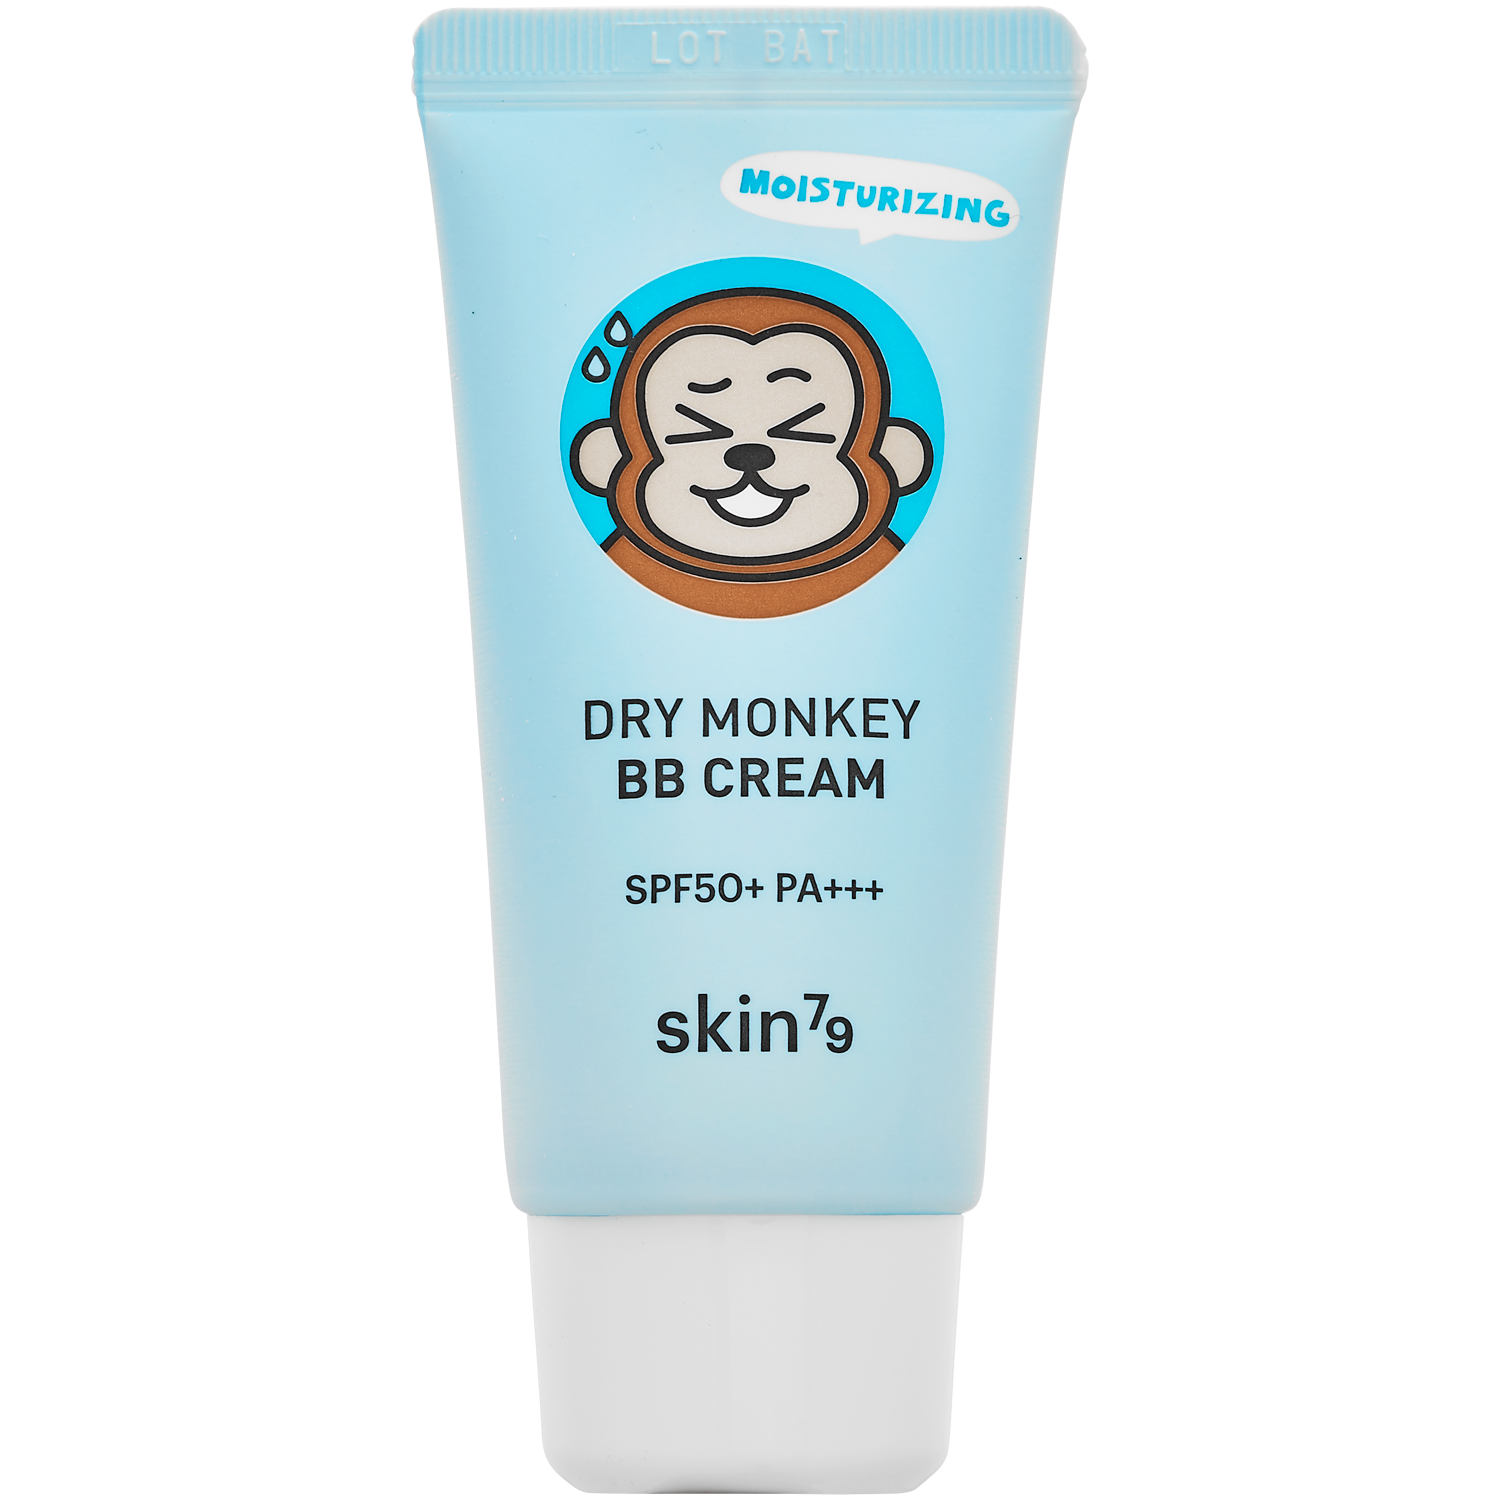 Skin79 Dry Monkey nawilżający krem BB do twarzy SPF50 beige, 30 g | hebe.pl